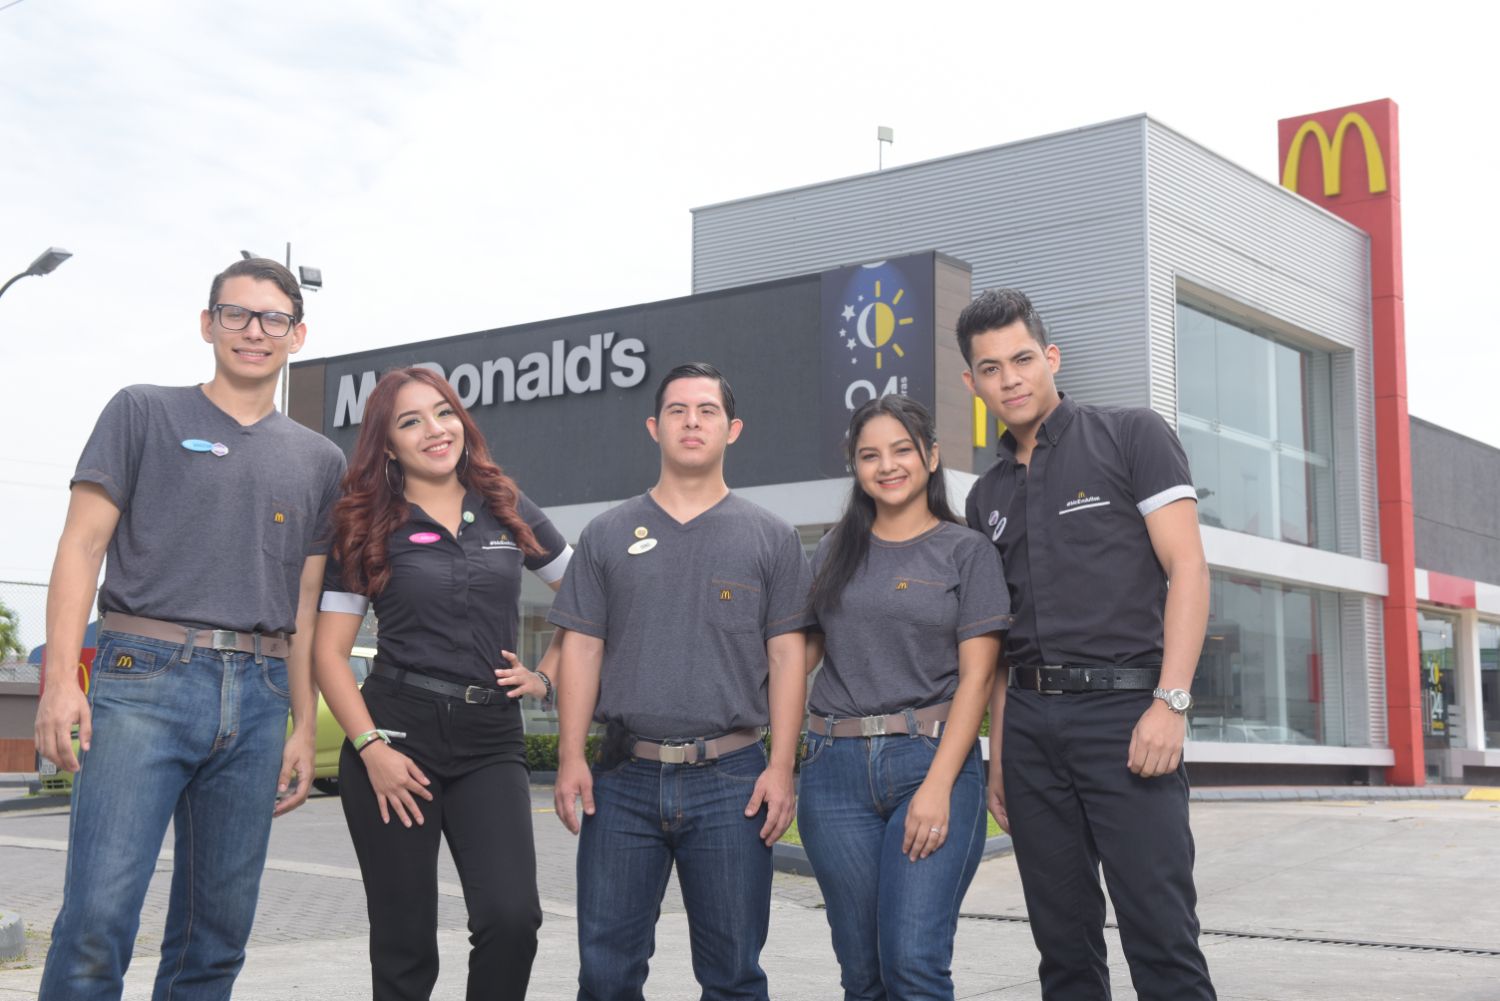 Arcos Dorados Ecuador (McDonald’s Ecuador)